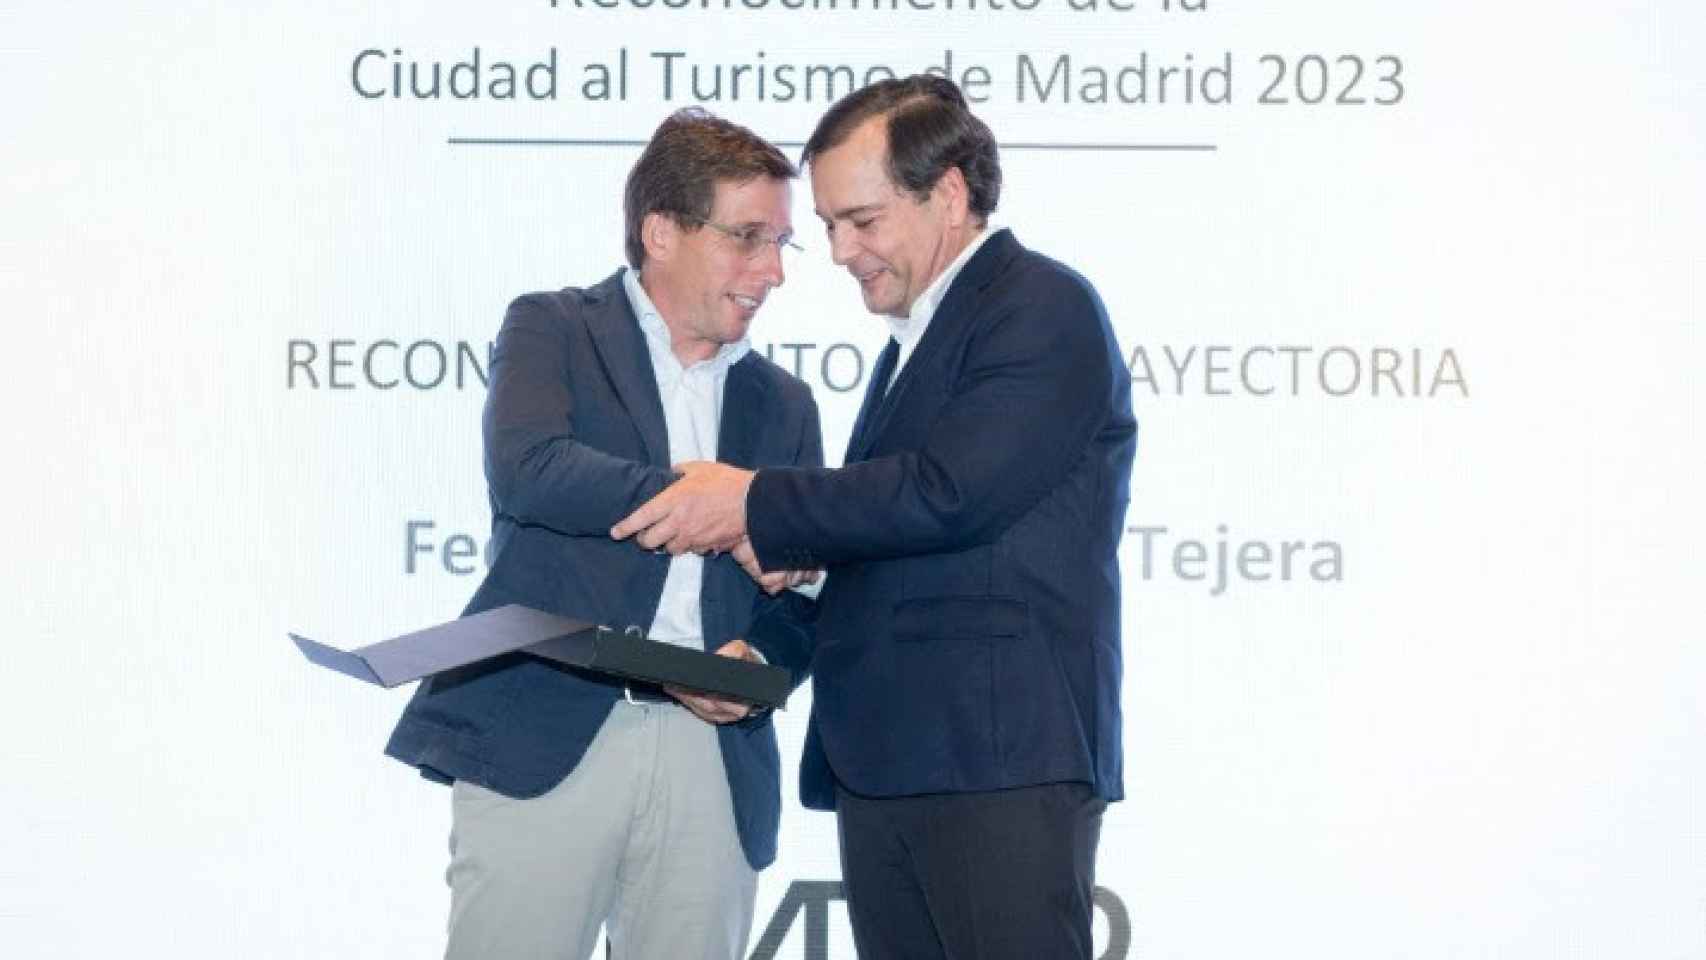 El alcalde de Madrid entregándole el premio a Federico J. González Tejera.